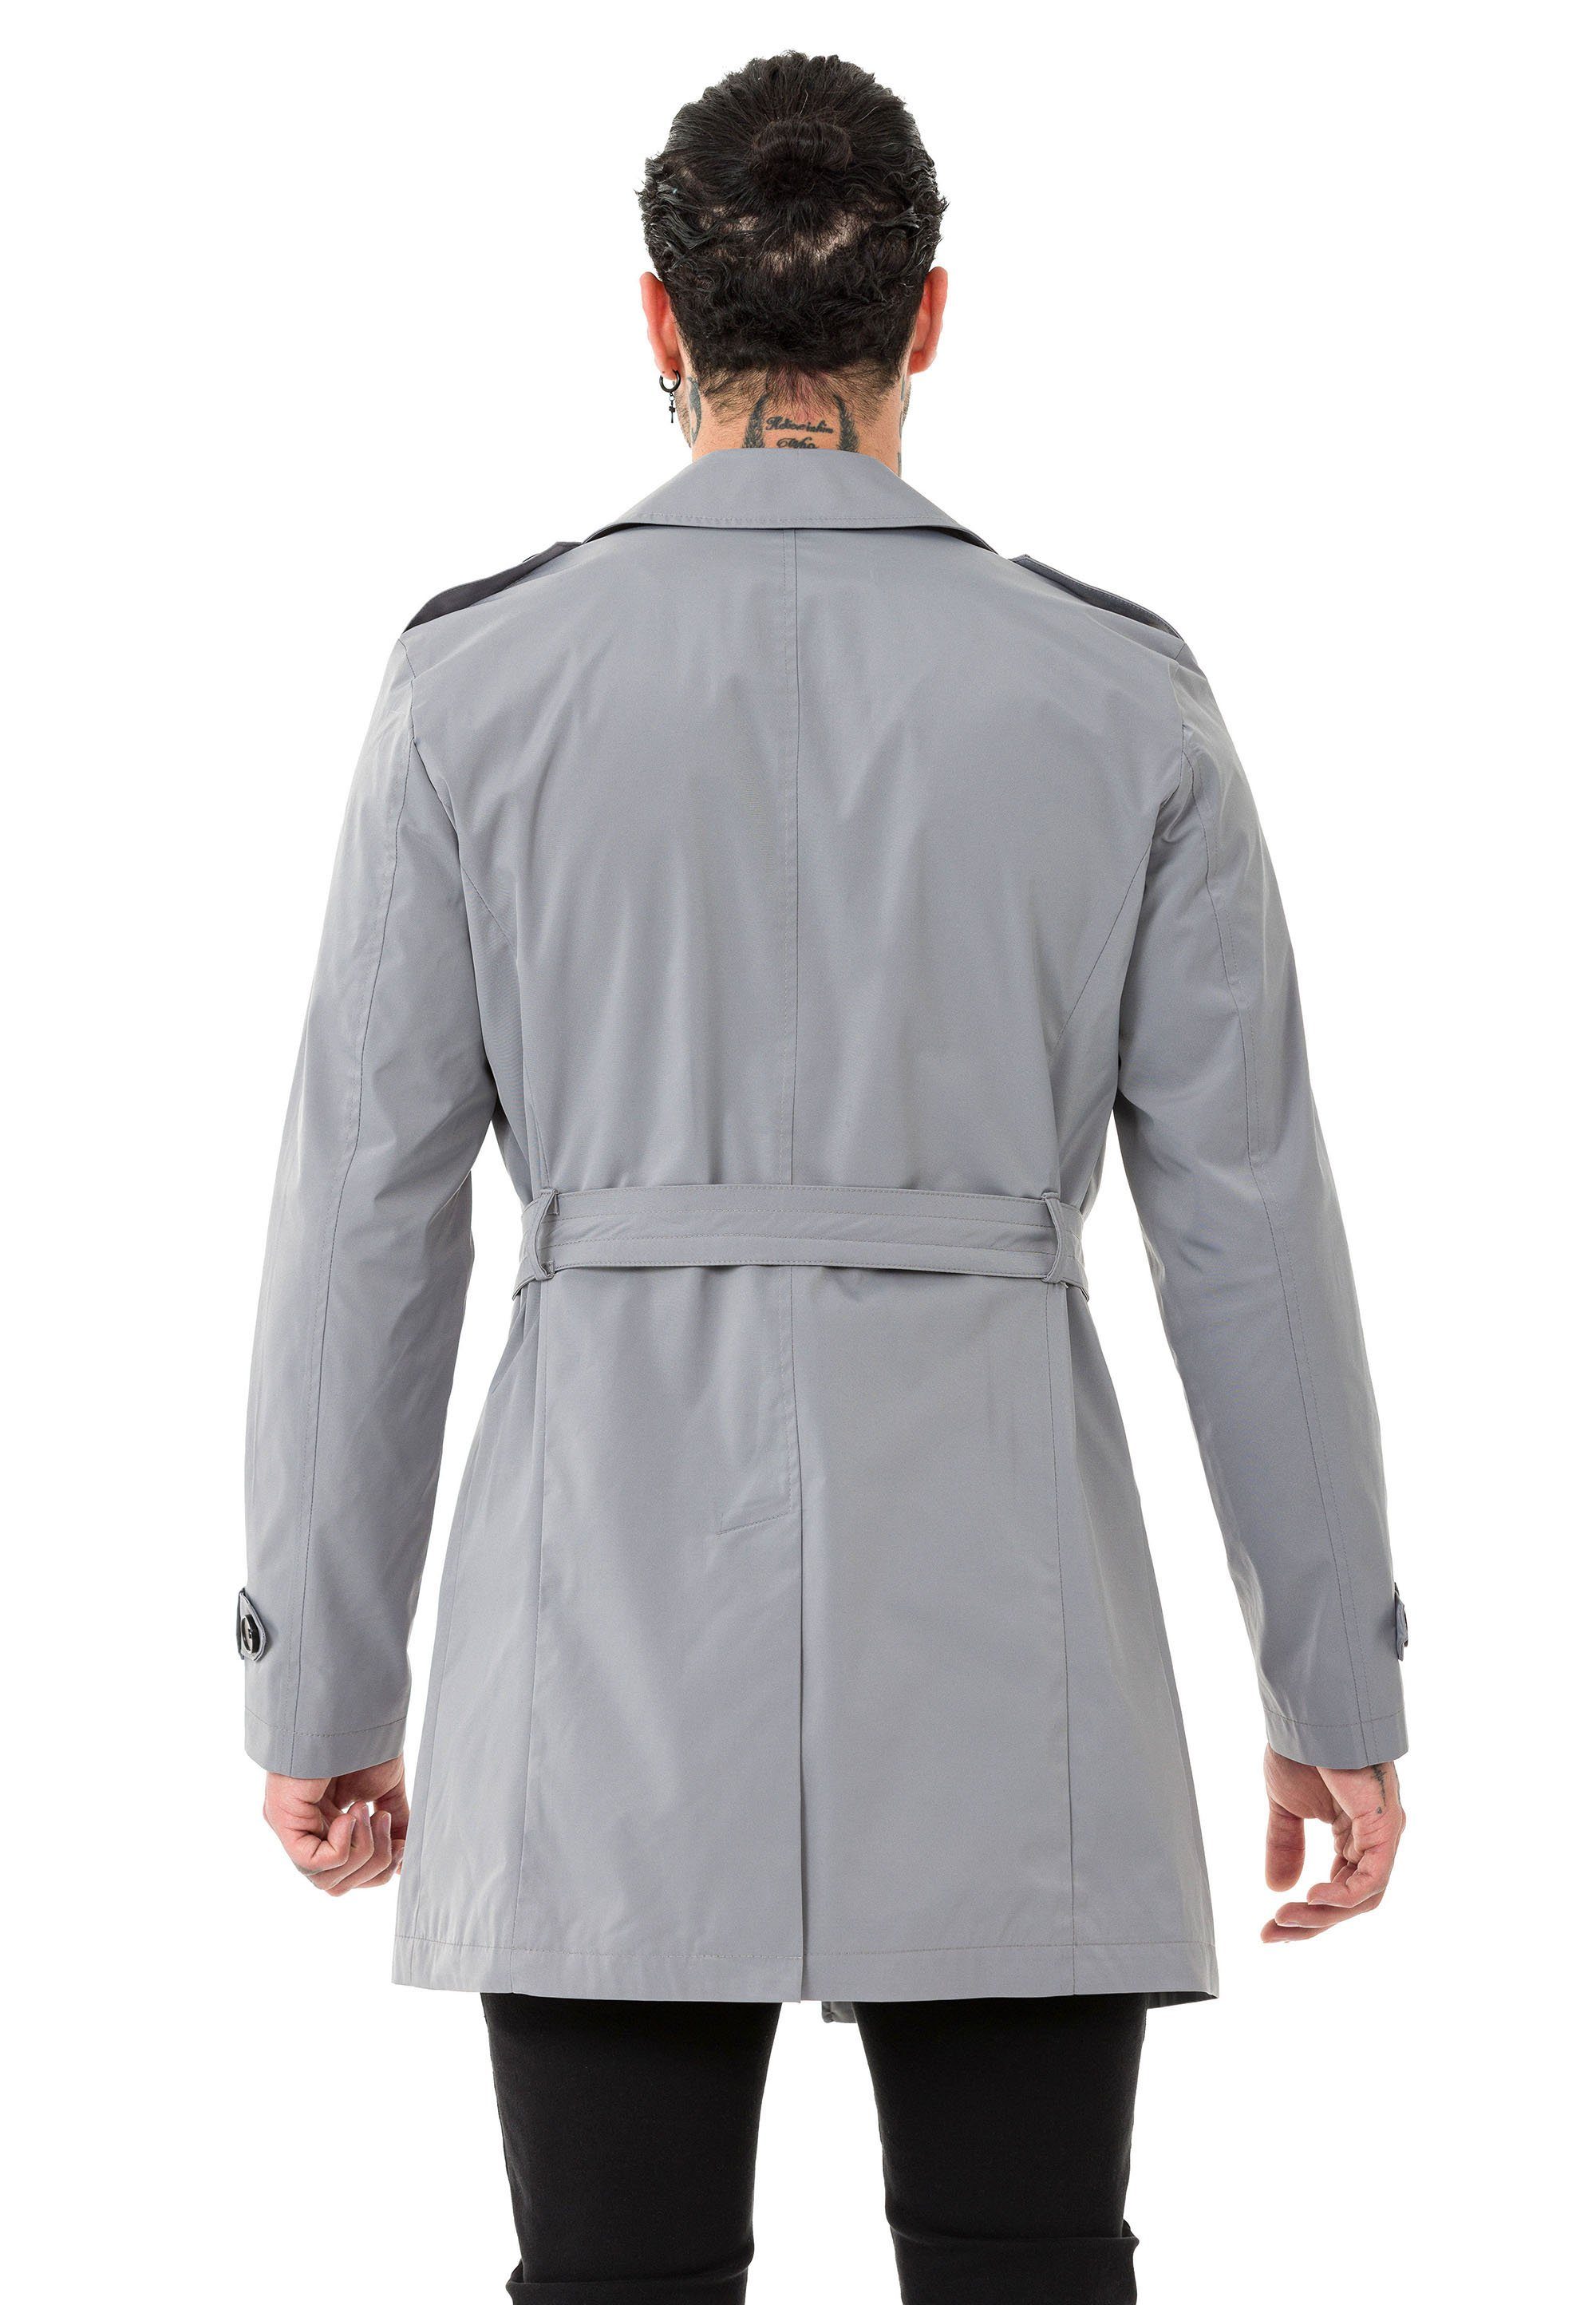 RedBridge Trenchcoat Qualität Grau Mantel Premium mit Gürtelschnalle